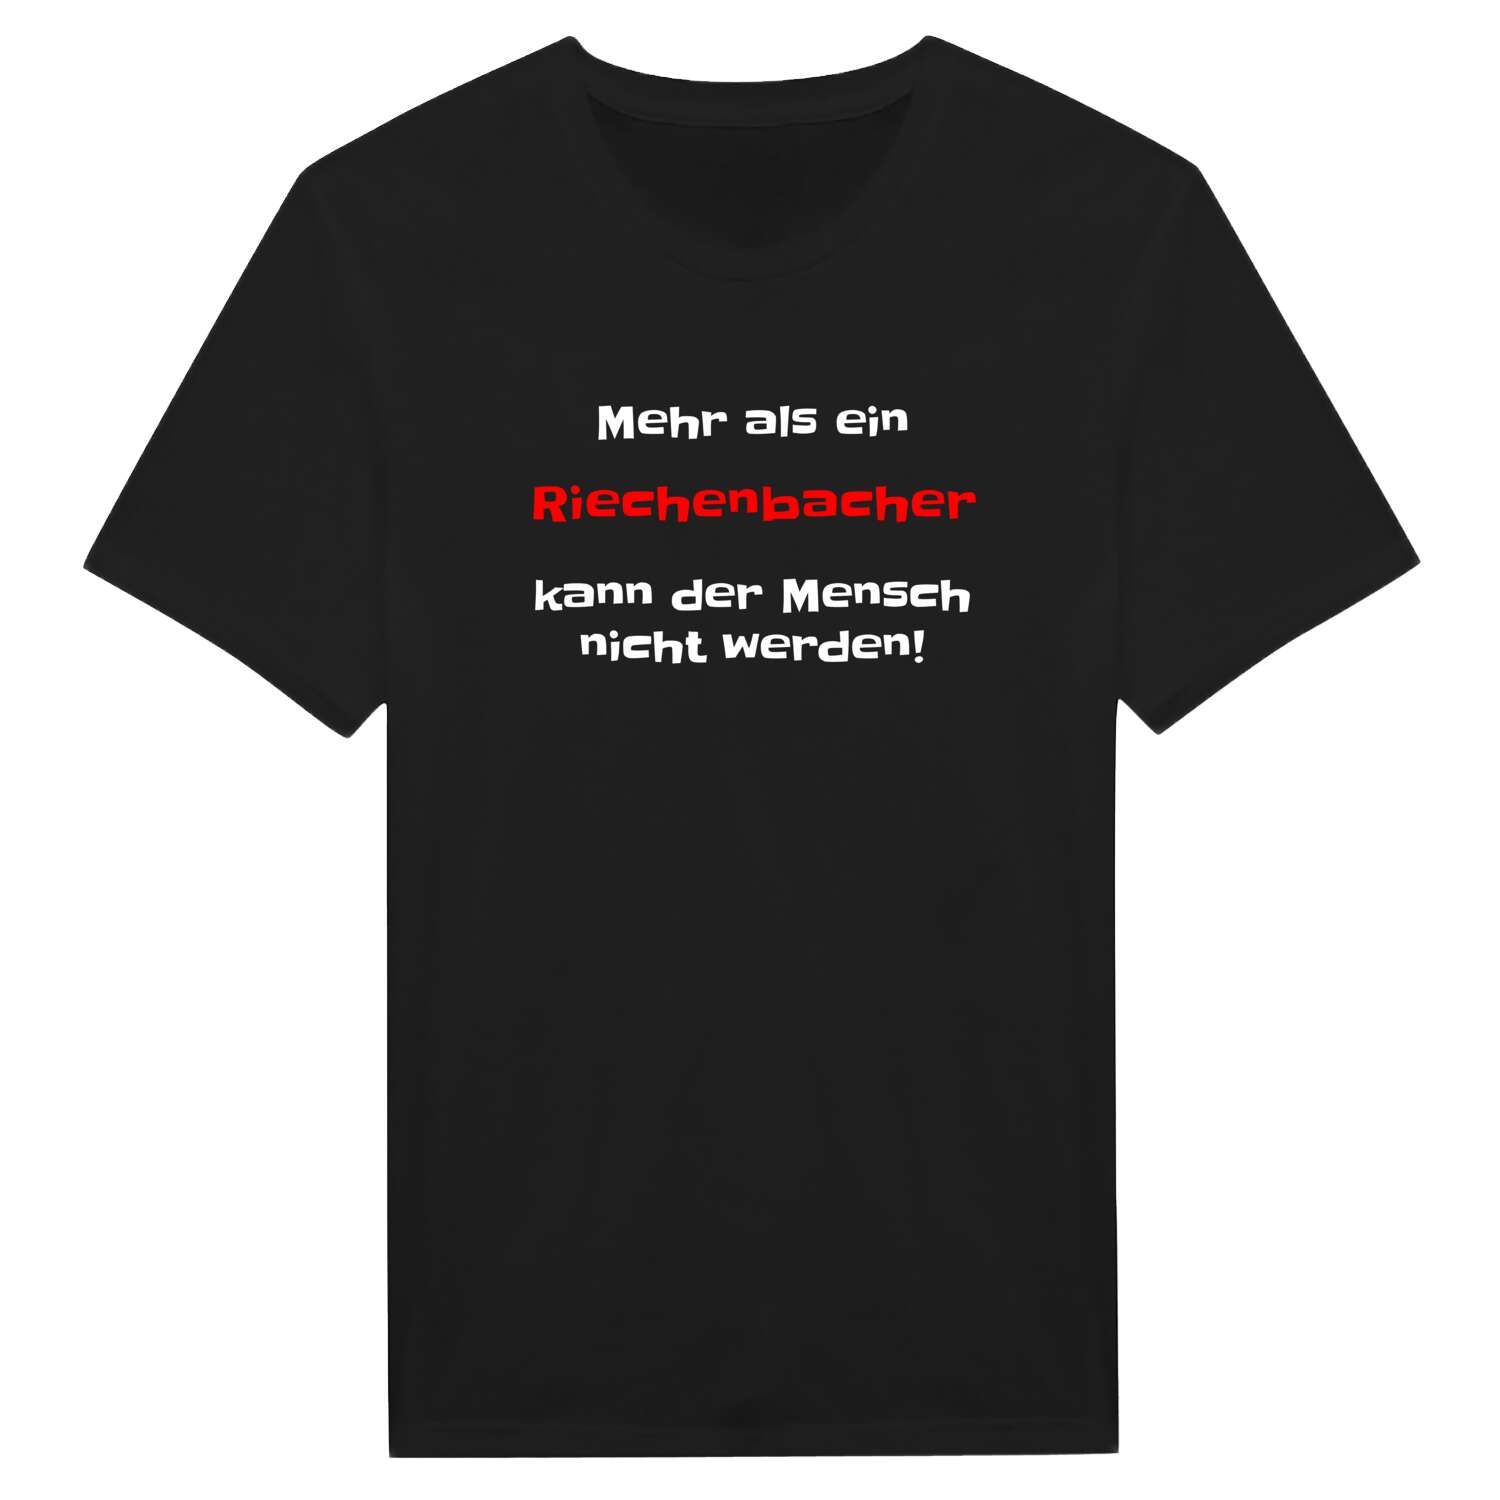 Riechenbach T-Shirt »Mehr als ein«